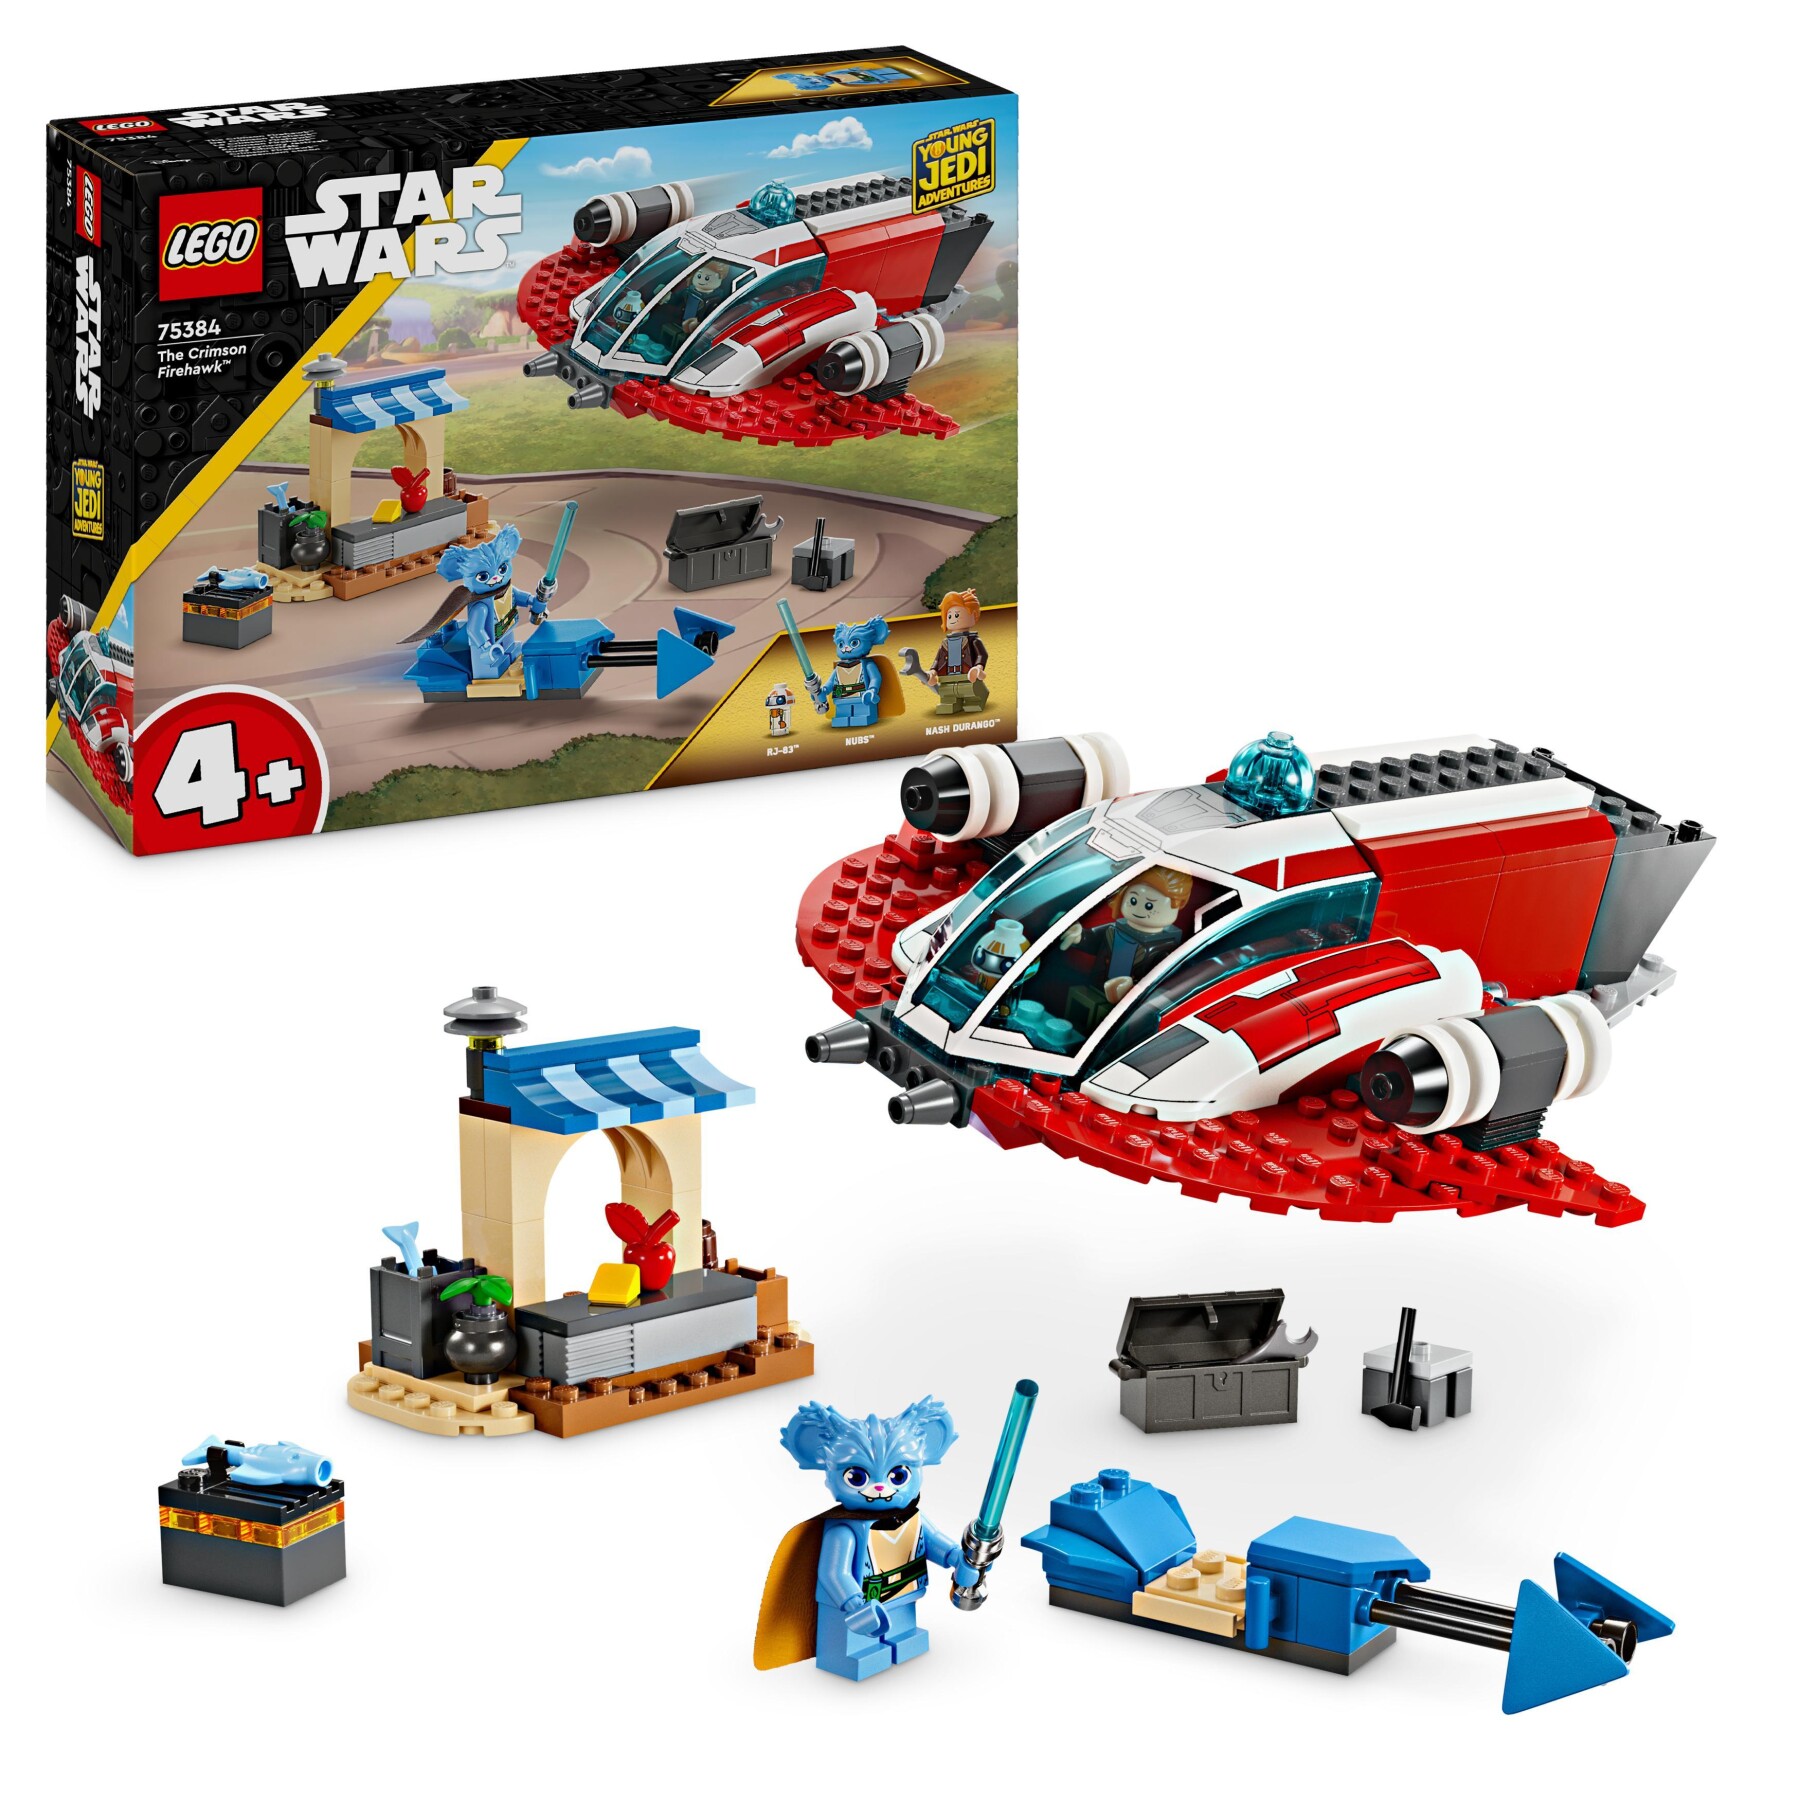 Lego star wars 75384 the crimson firehawk, starter set con astronave giocattolo, speeder bike e 3 personaggi, regalo bambini 4+ - LEGO® Star Wars™